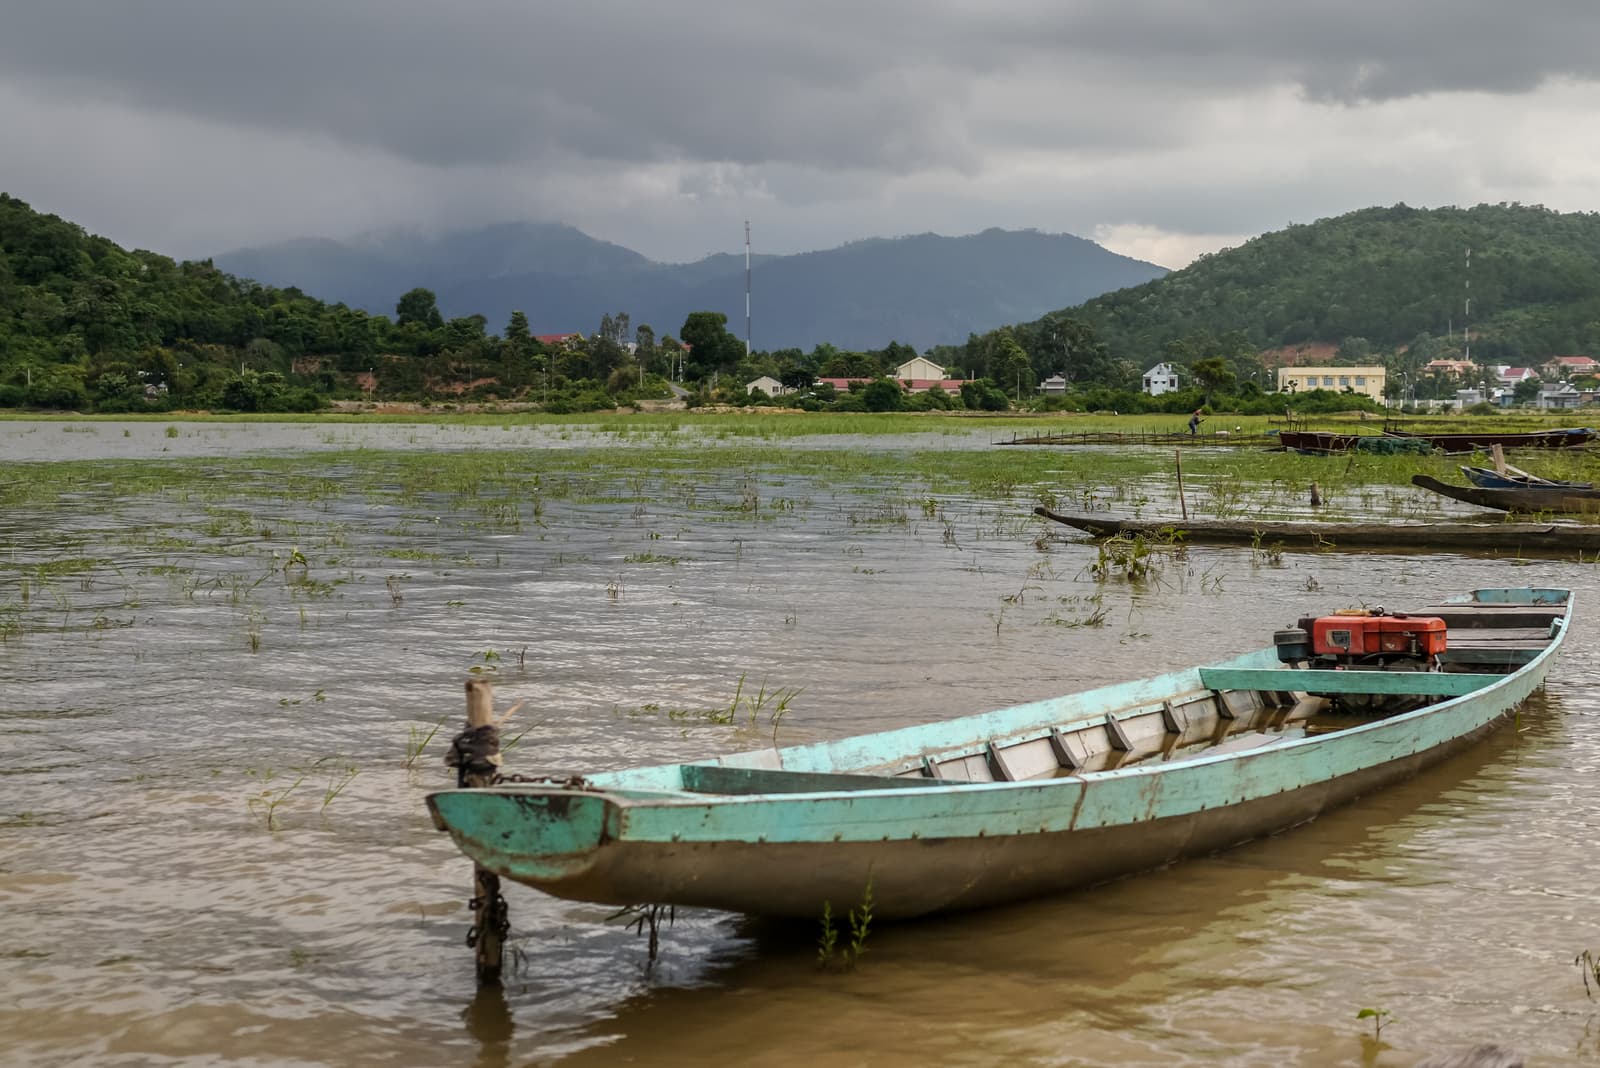 Lắk Lake, Liên Sơn, Đắk Lắk Province, Vietnam